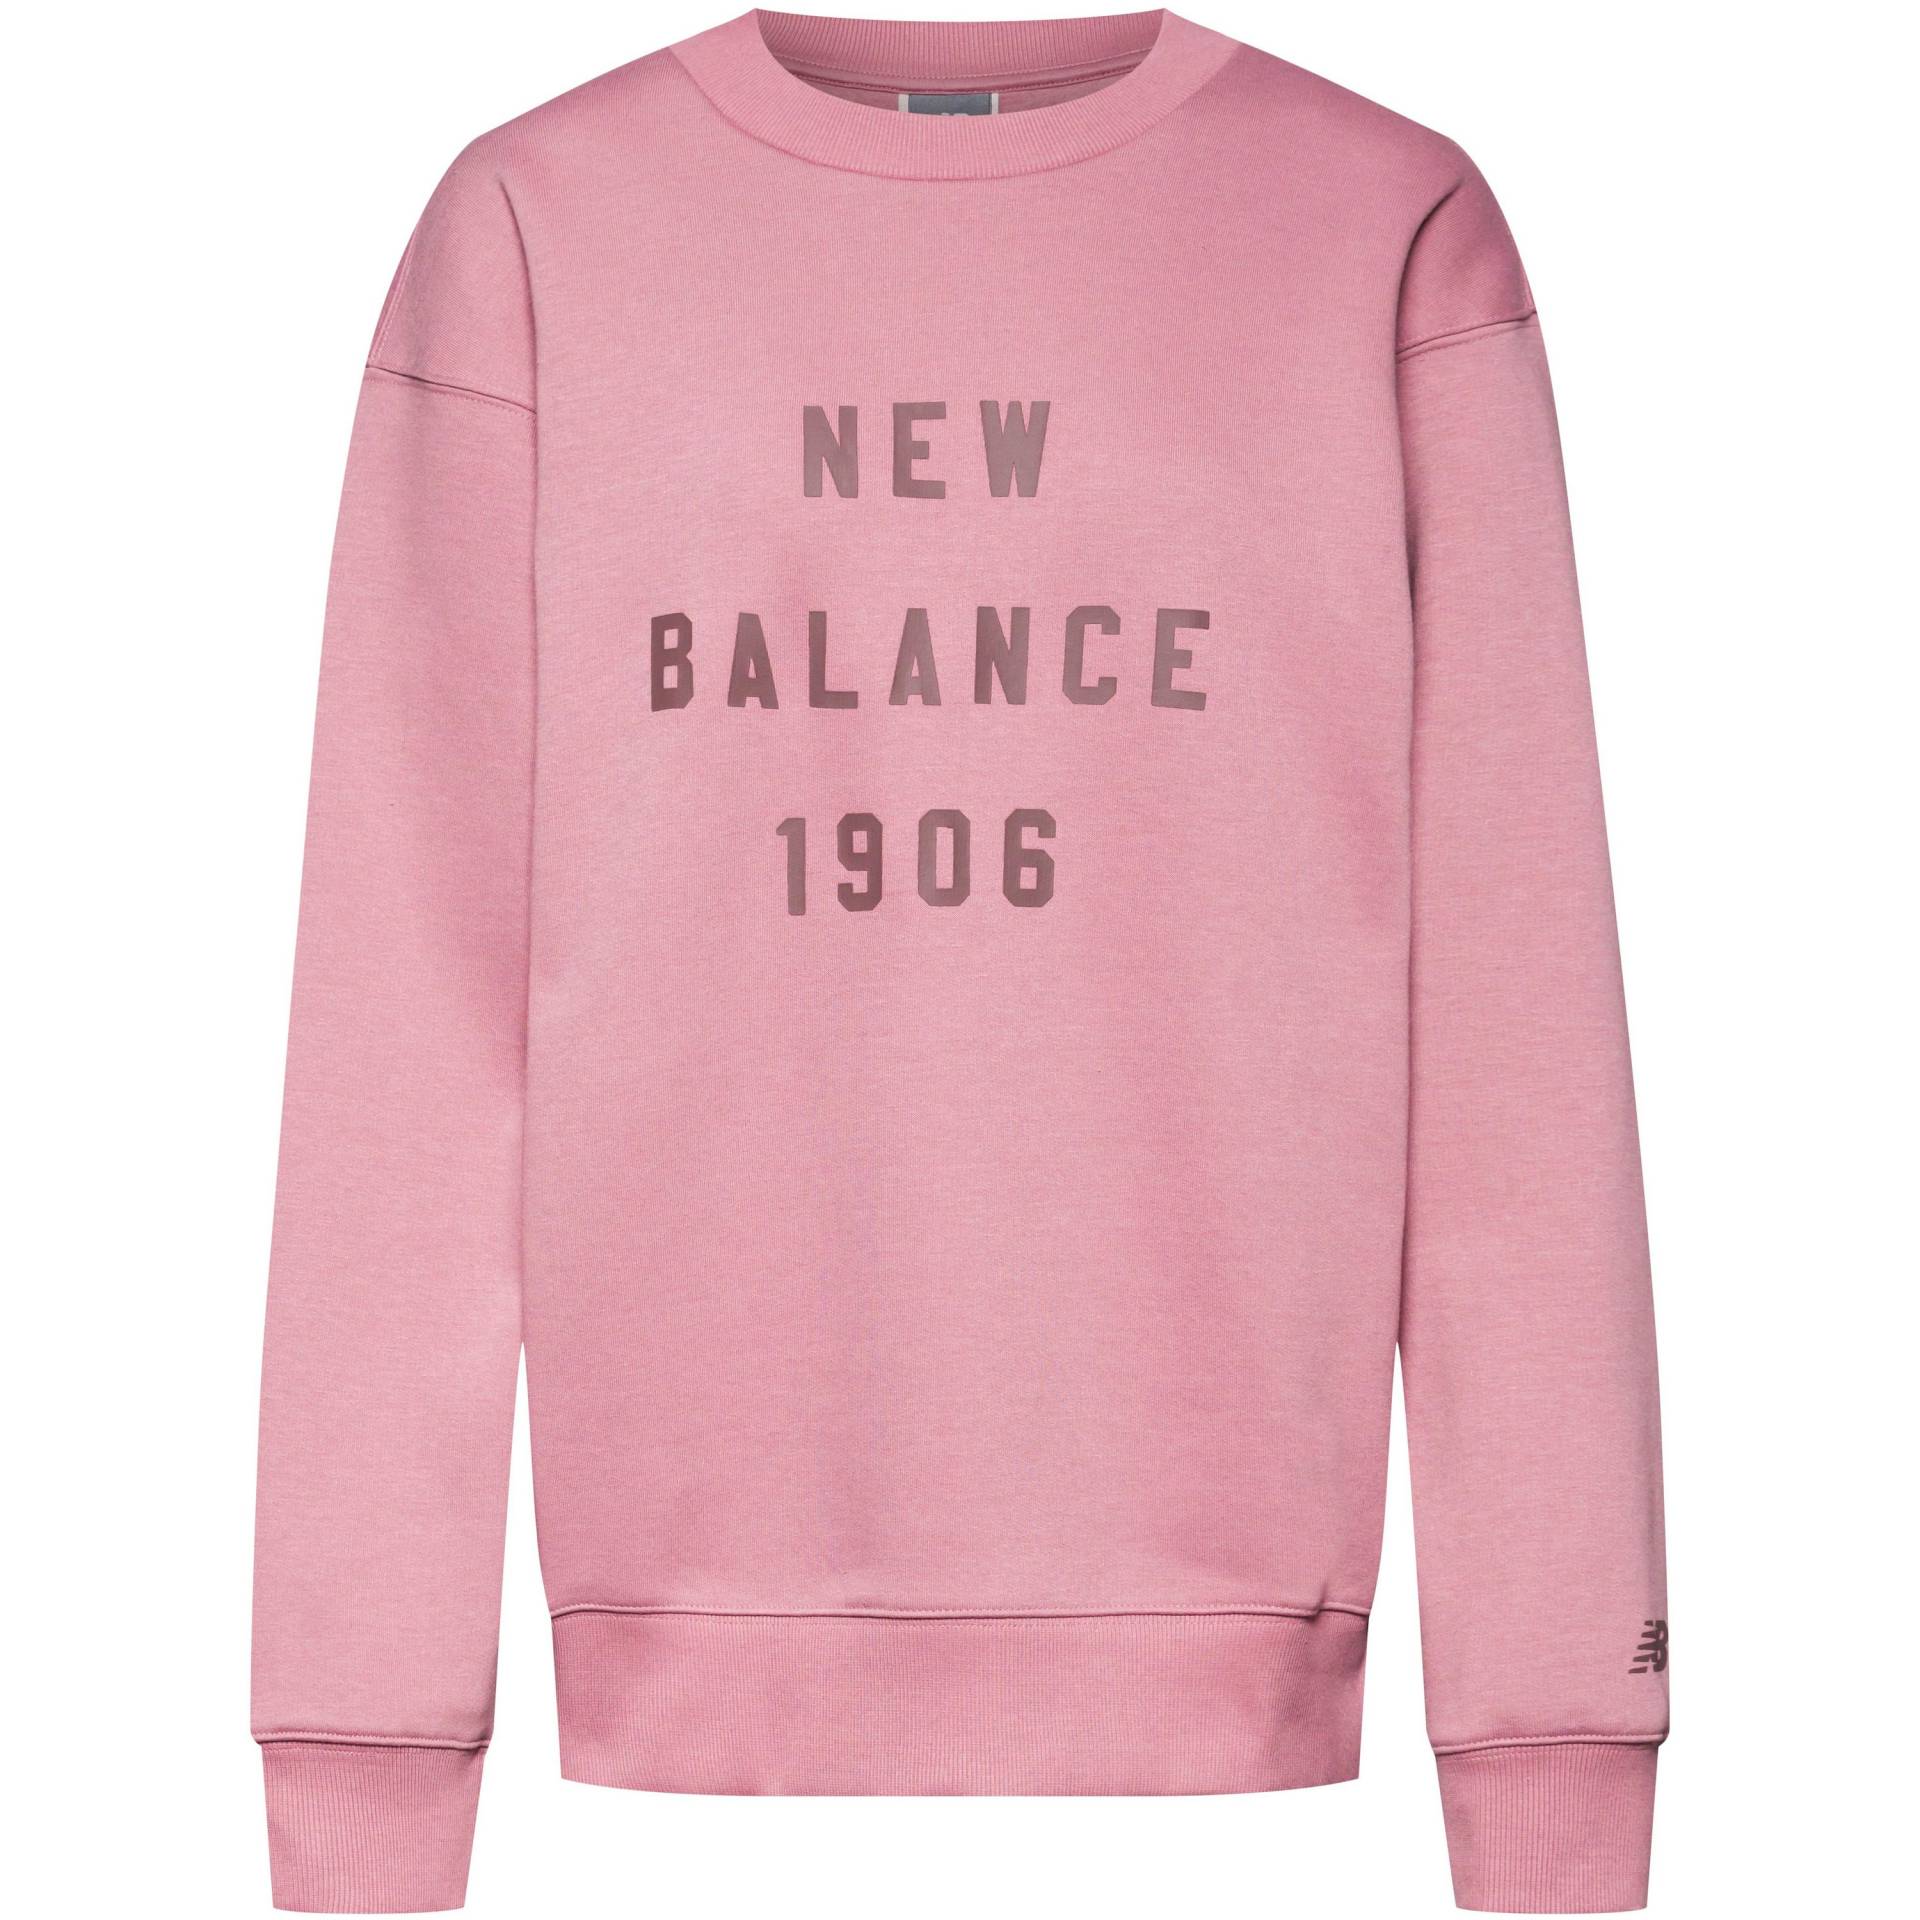 NEW BALANCE Sweatshirt Herren von New Balance